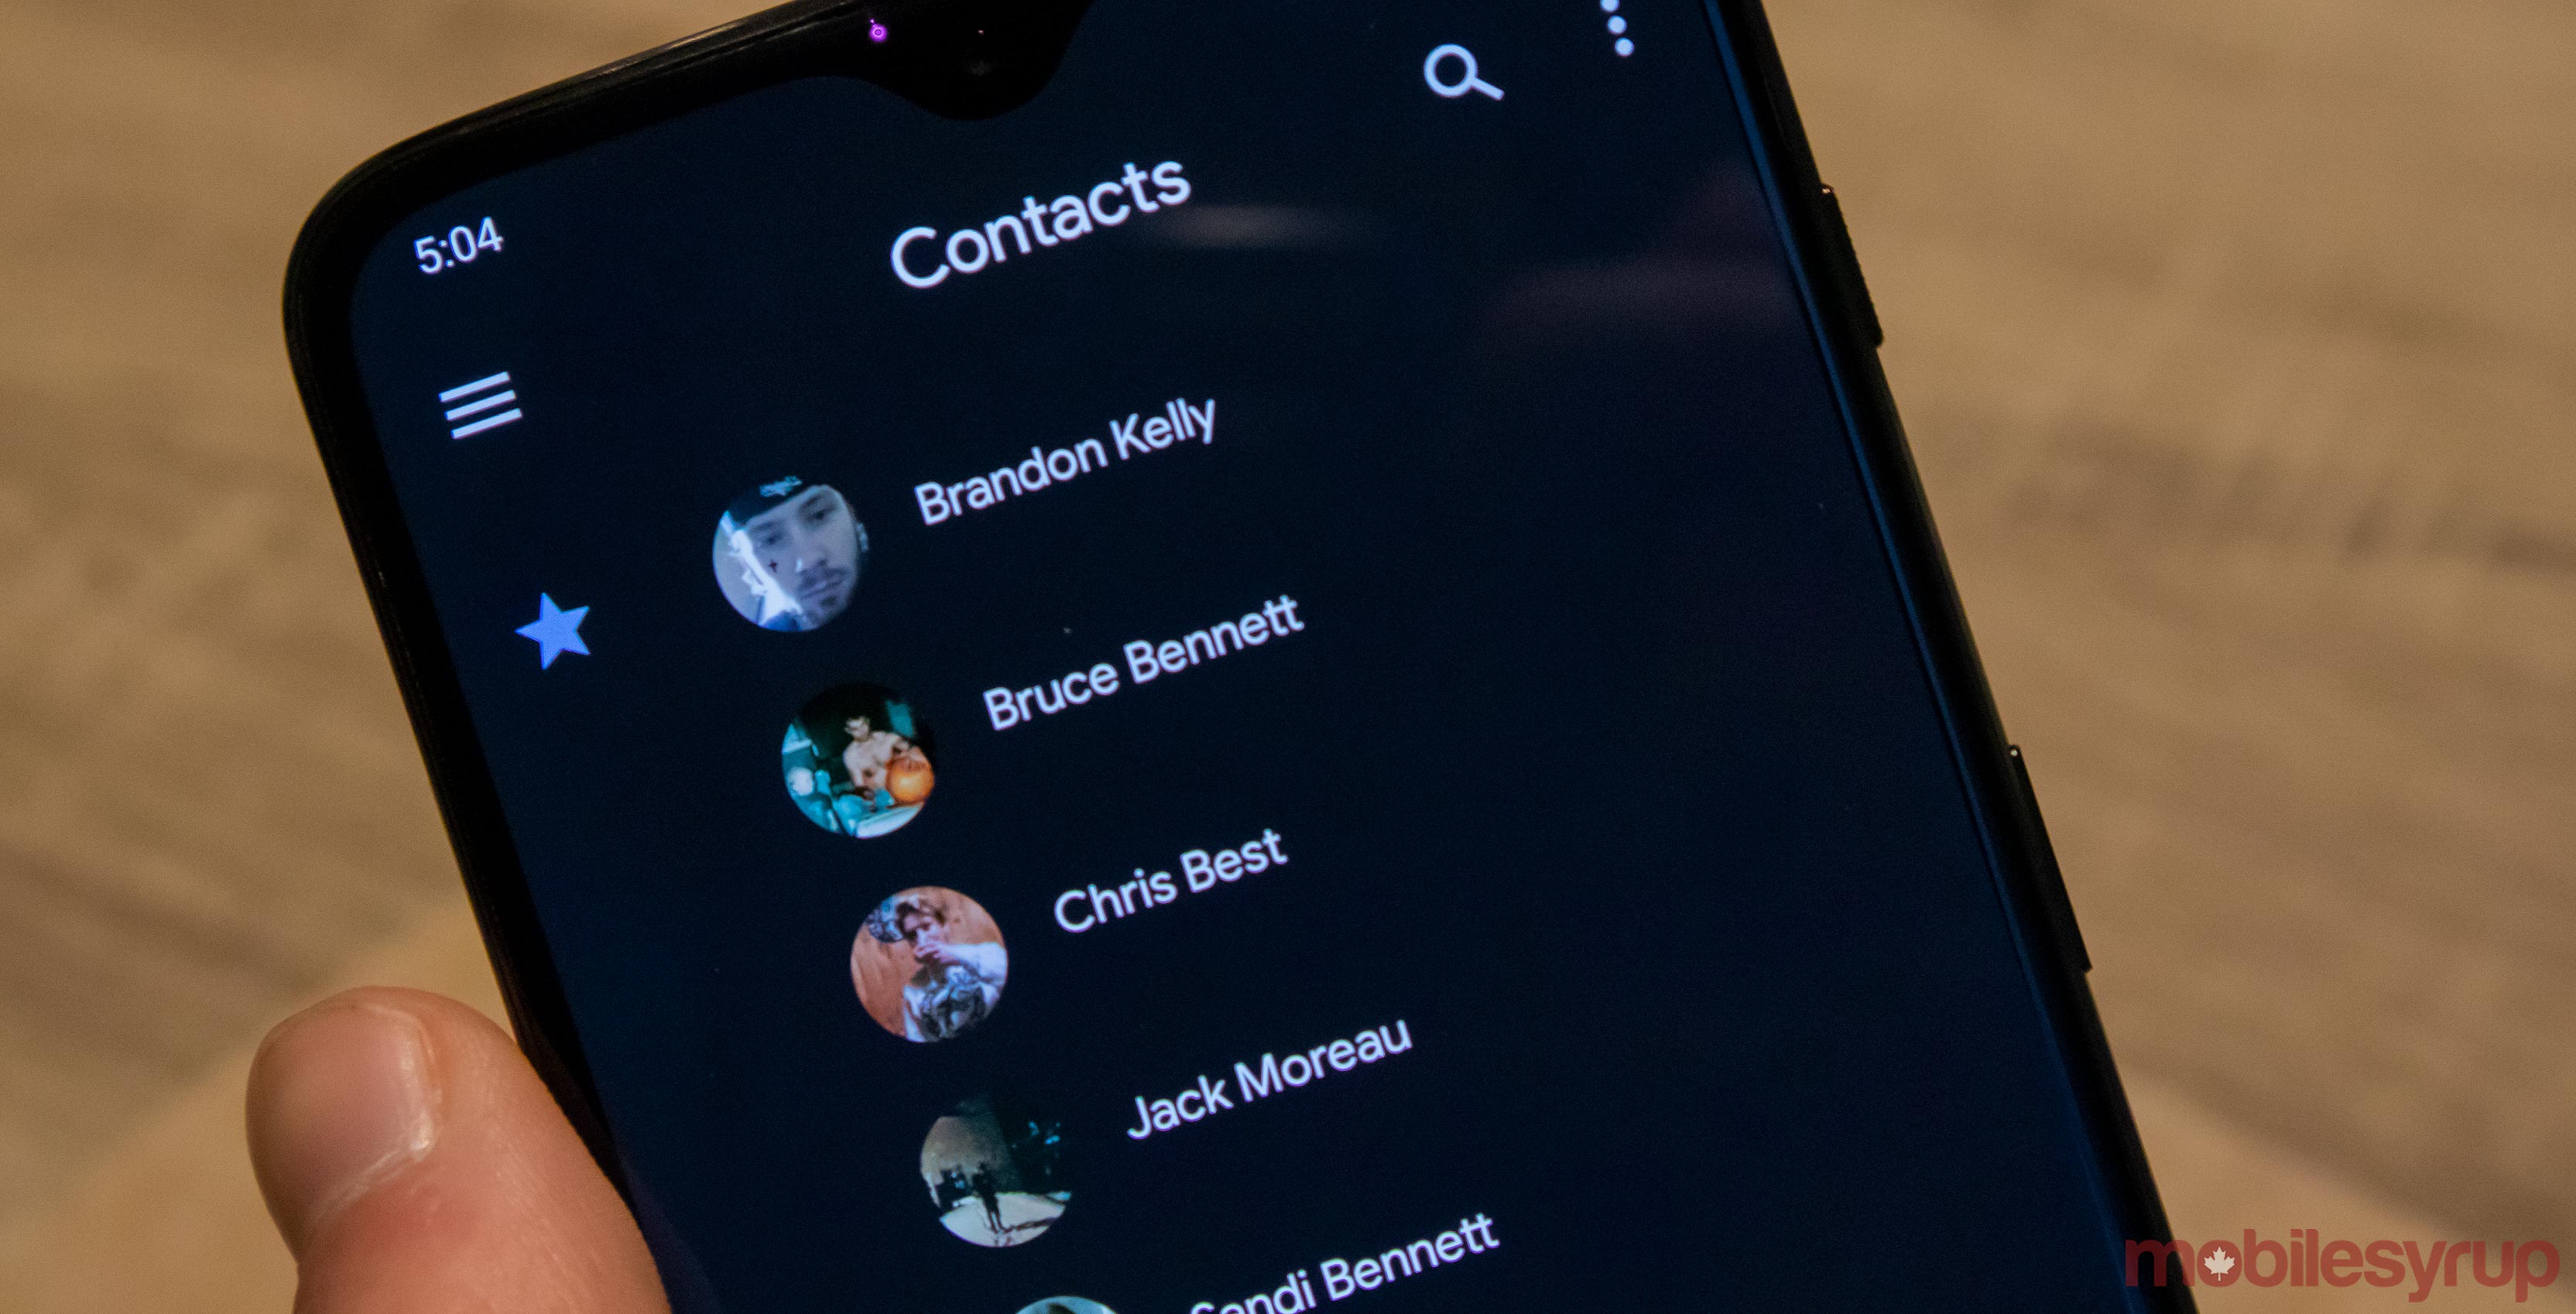 Google Contacts app adds dark mode